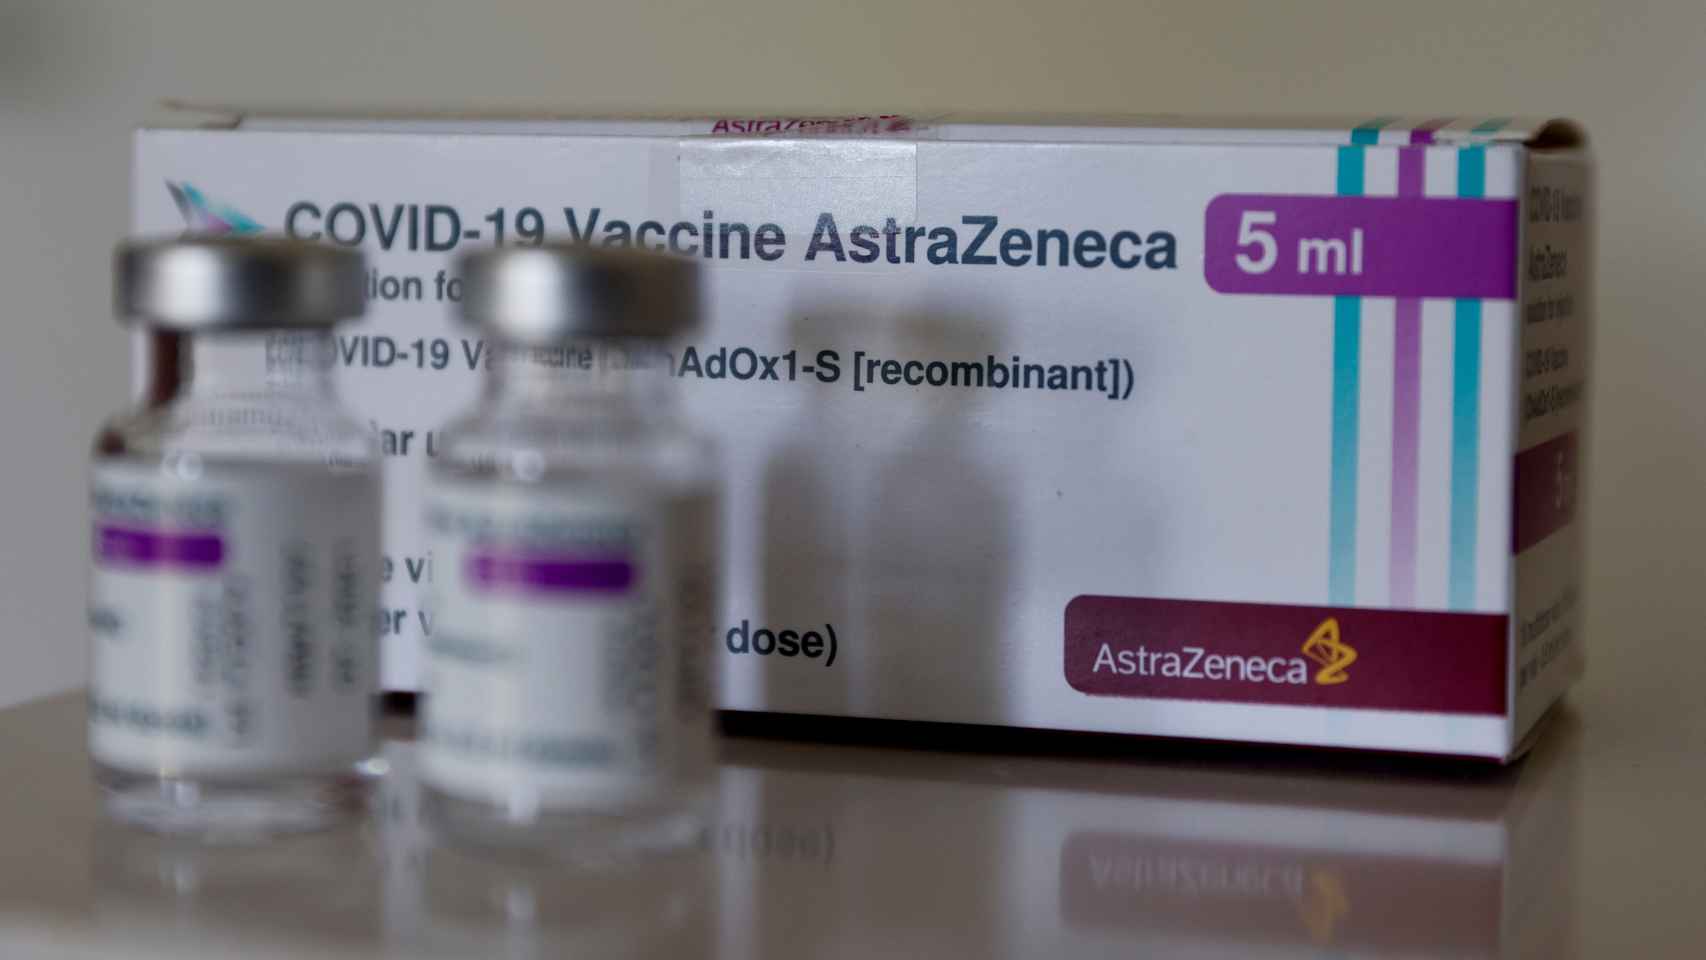 Viales de la vacuna de AstraZeneca contra la Covid-19.